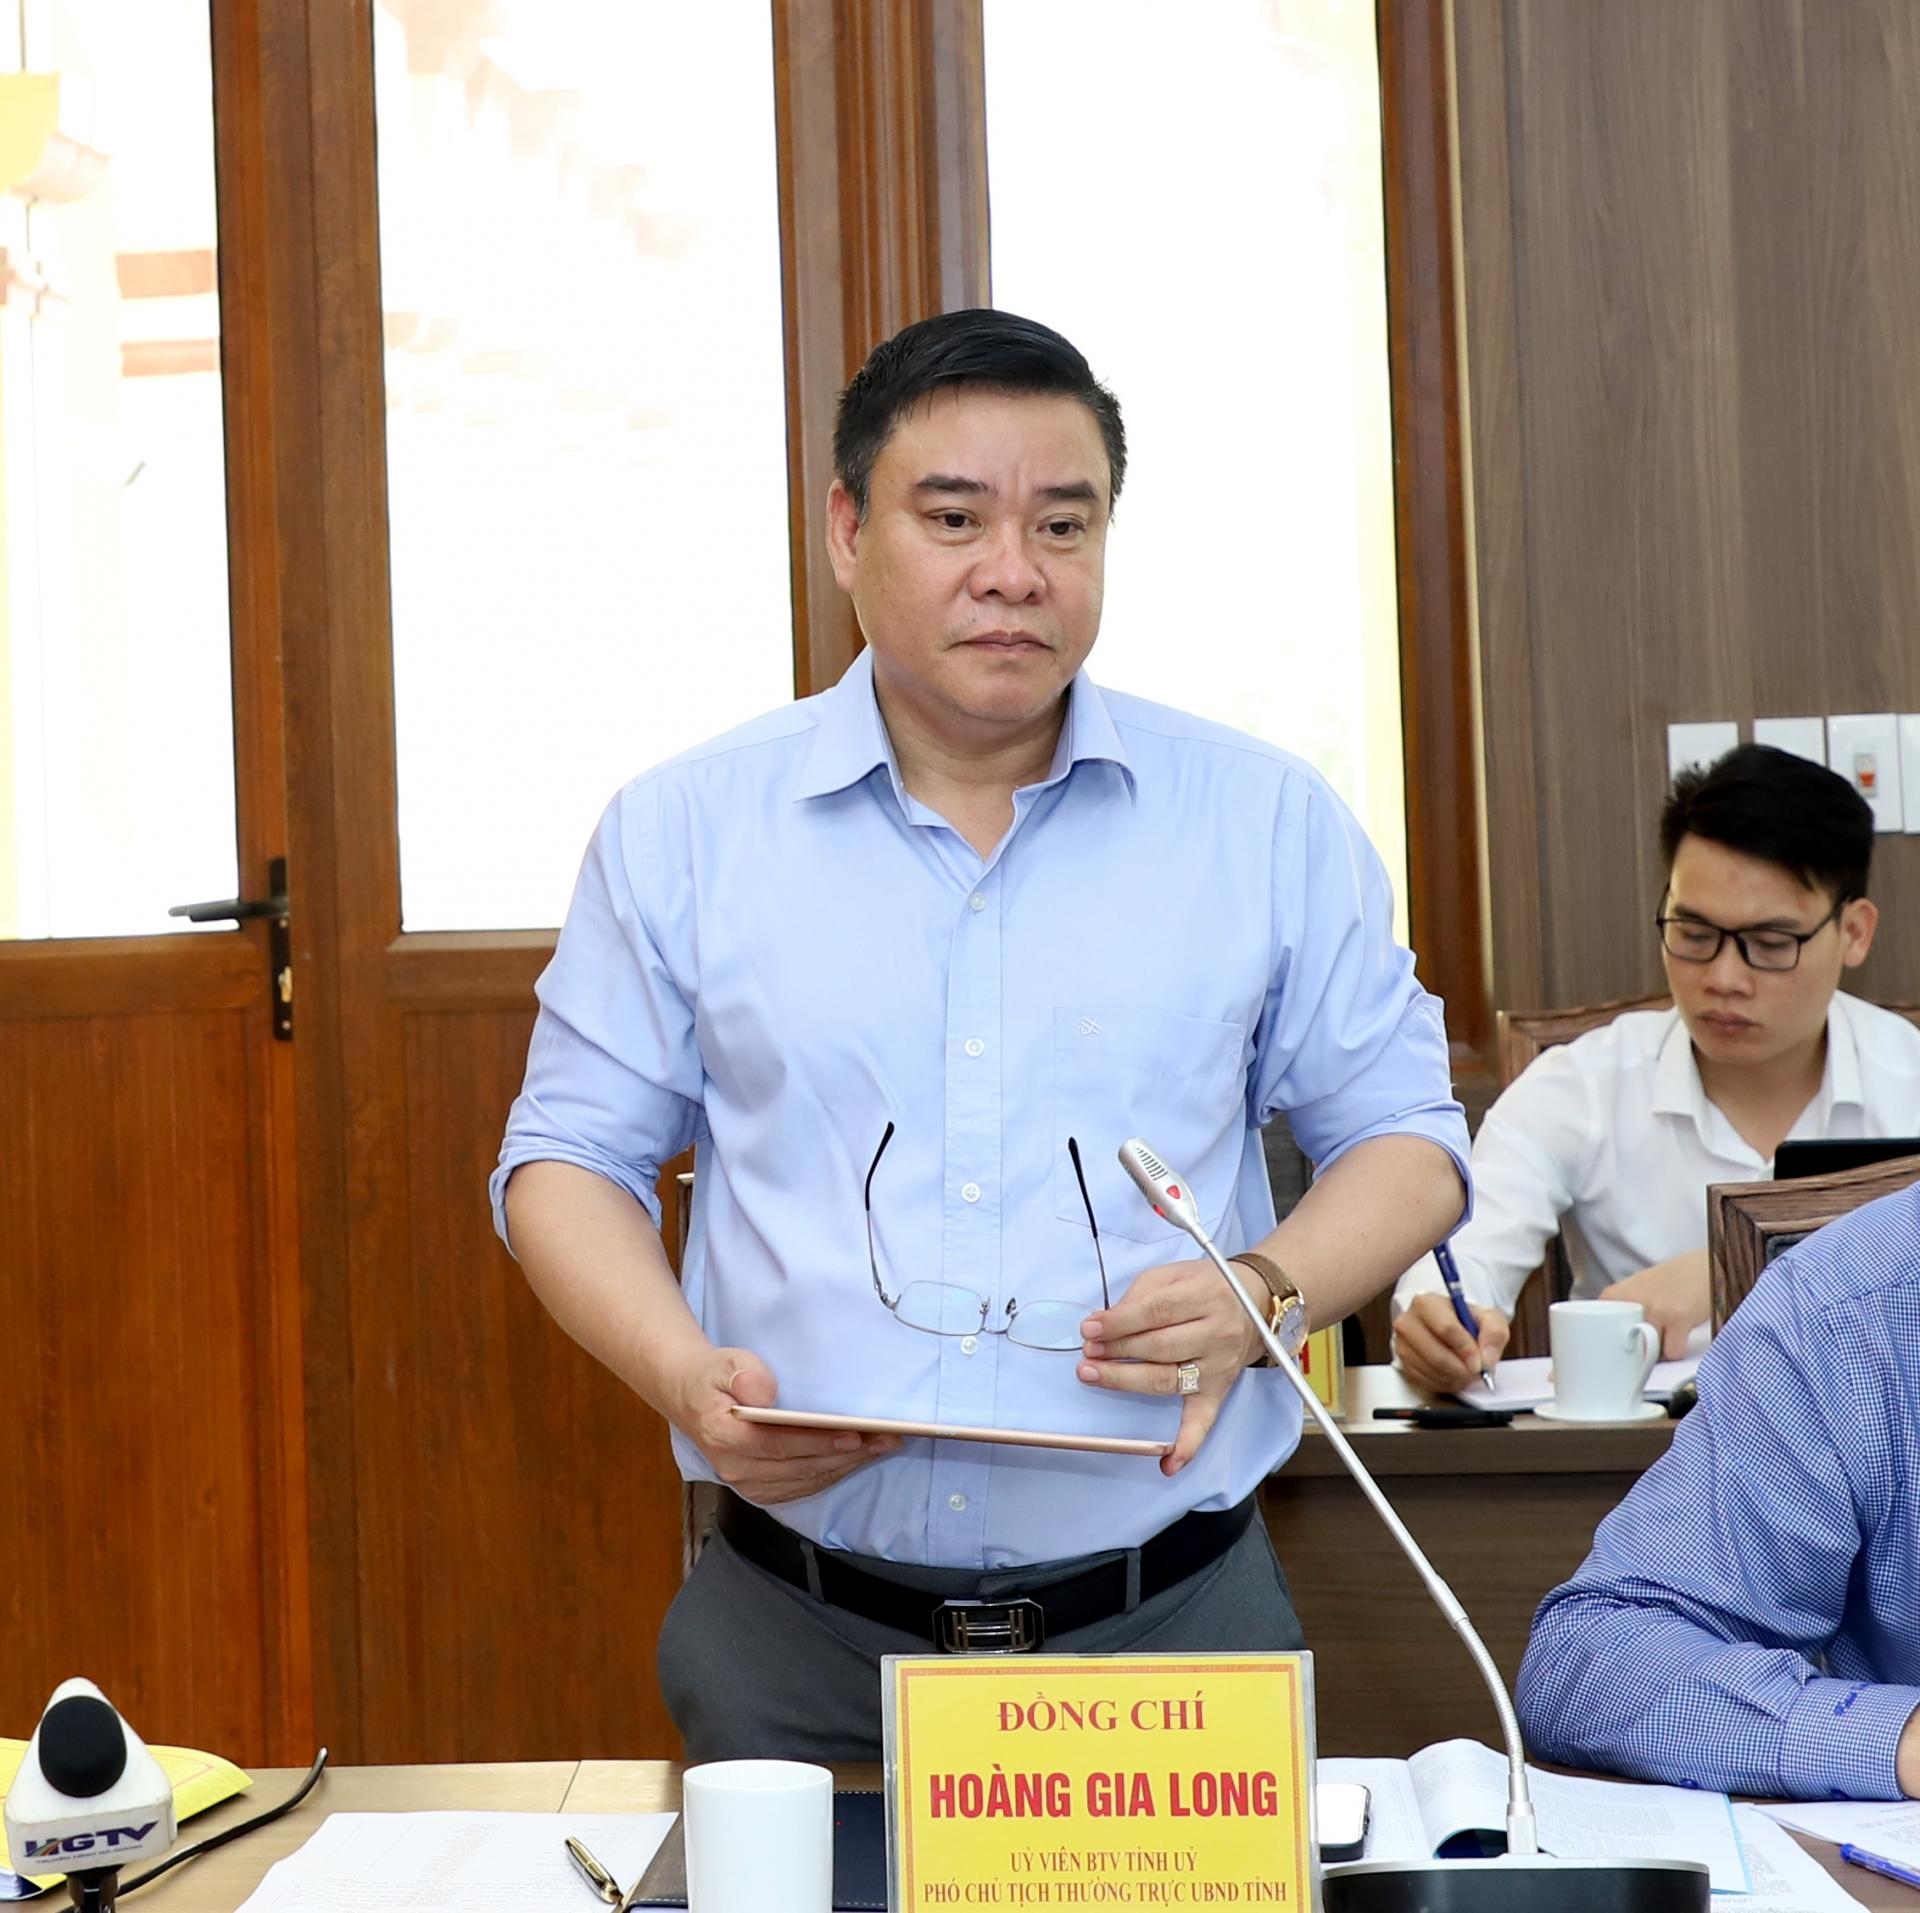 Phó Chủ tịch Thường trực UBND tỉnh Hoàng Gia Long đề nghị huyện Vị Xuyên nắm rõ số liệu từng ngành, lĩnh vực, xác định rõ thế mạnh để có giải pháp chỉ đạo, điều hành phát triển KT – XH hiệu quả.